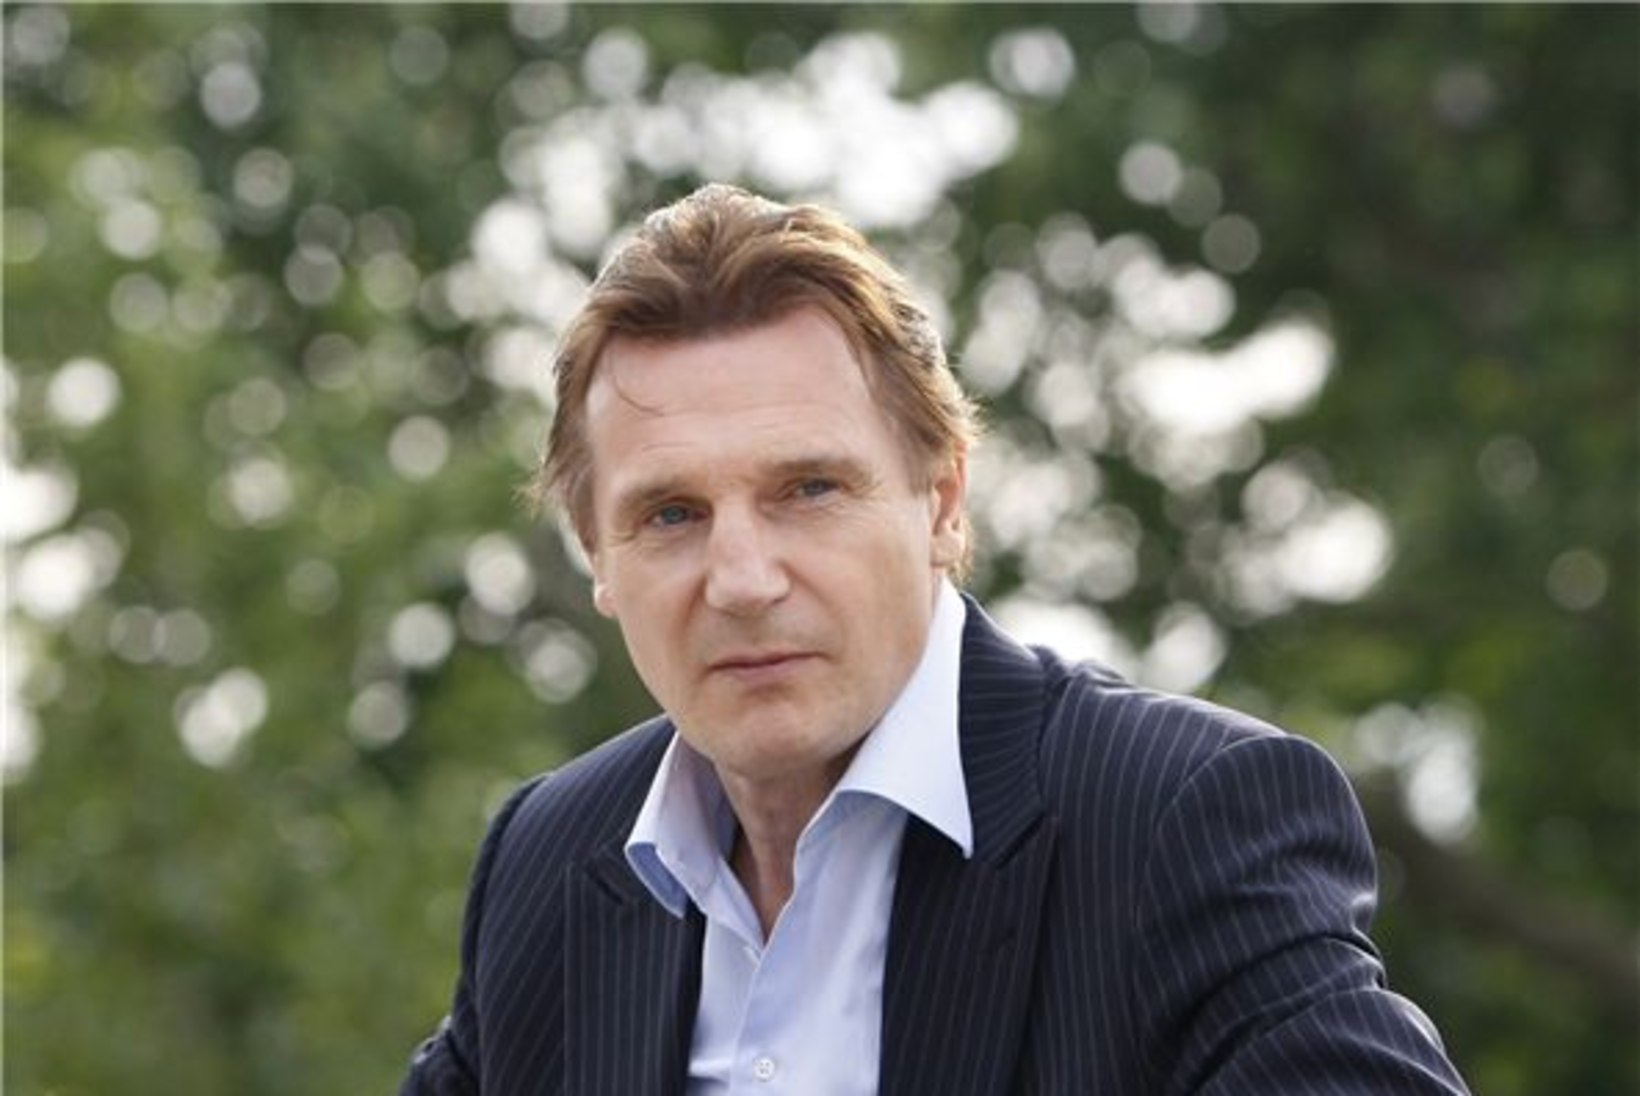 Lesestunud Liam Neeson leidis uue silmarõõmu?